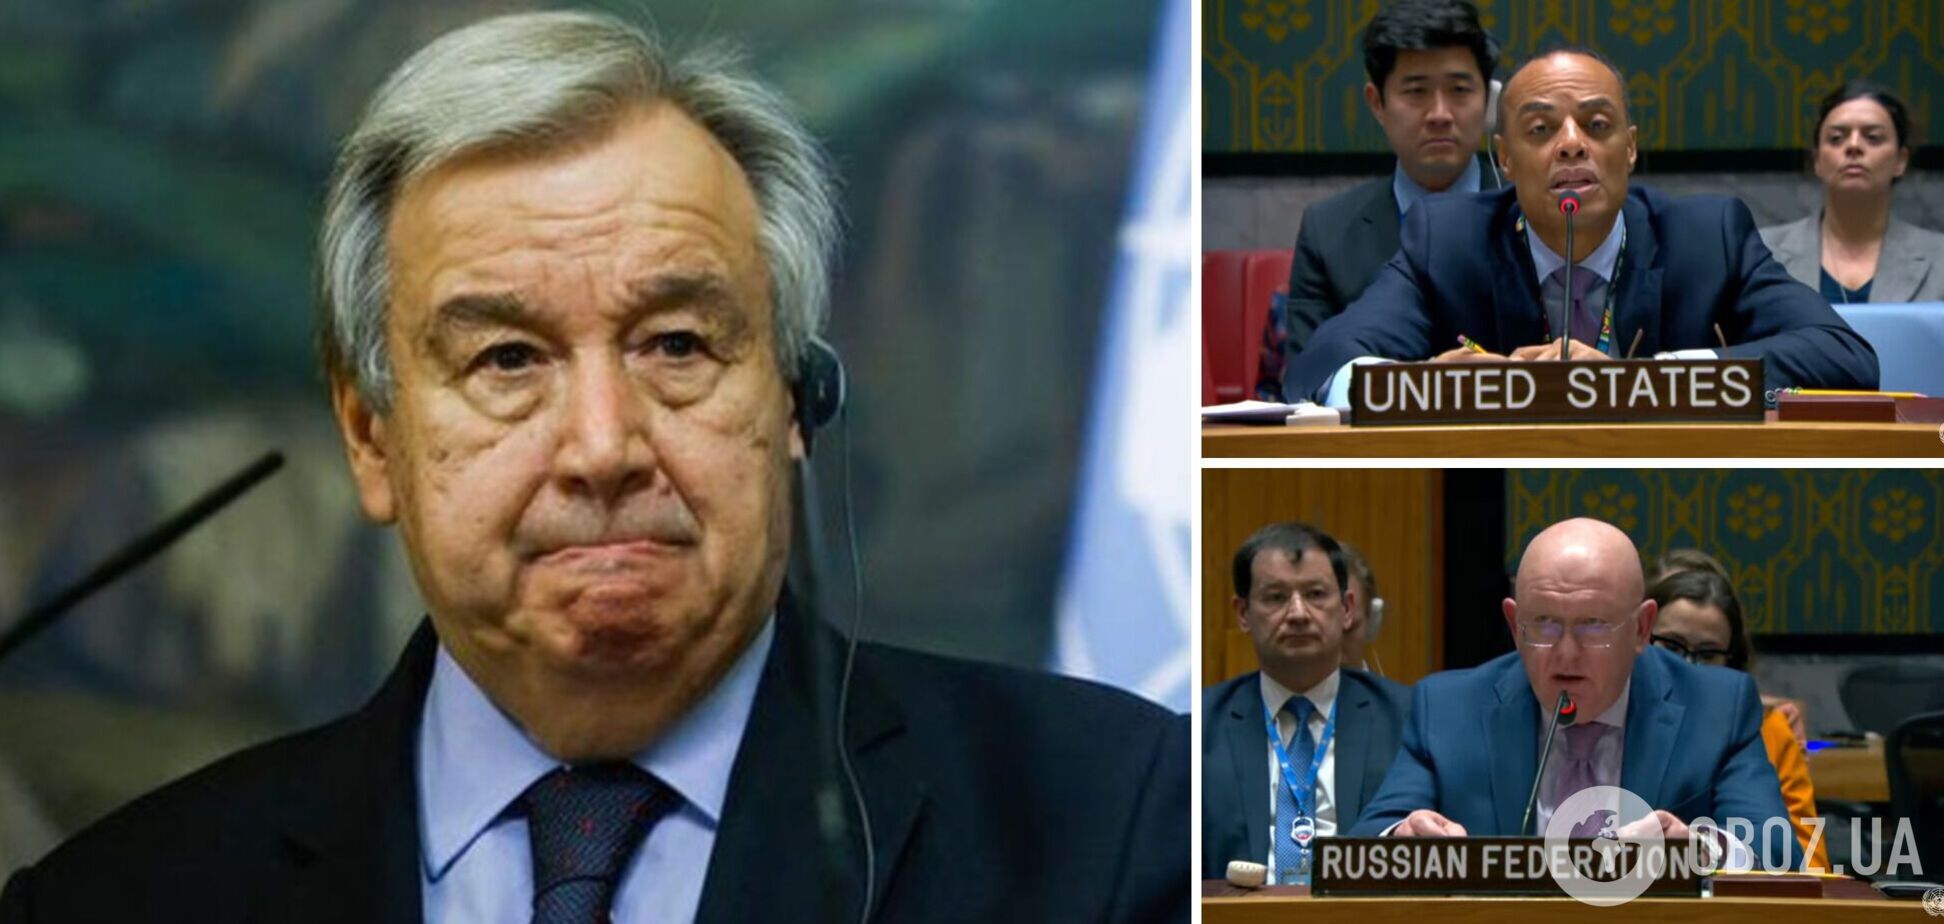 Екстрене засідання Радбезу ООН: Гутерреш 'рішуче засудив' ракетну атаку РФ, Небензя закликав Захід 'чекати найгірших новин'